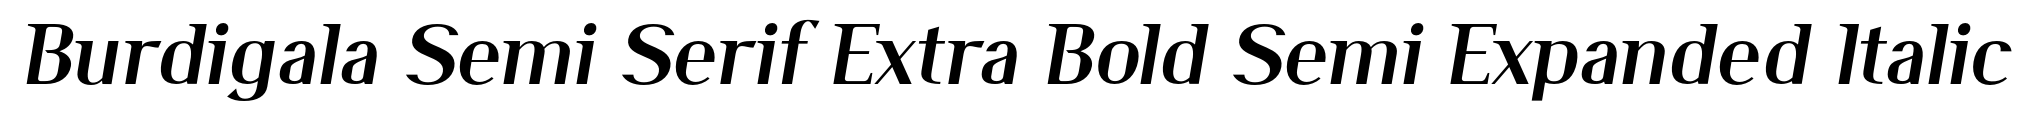 Burdigala Semi Serif Extra Bold Semi Expanded Italic image